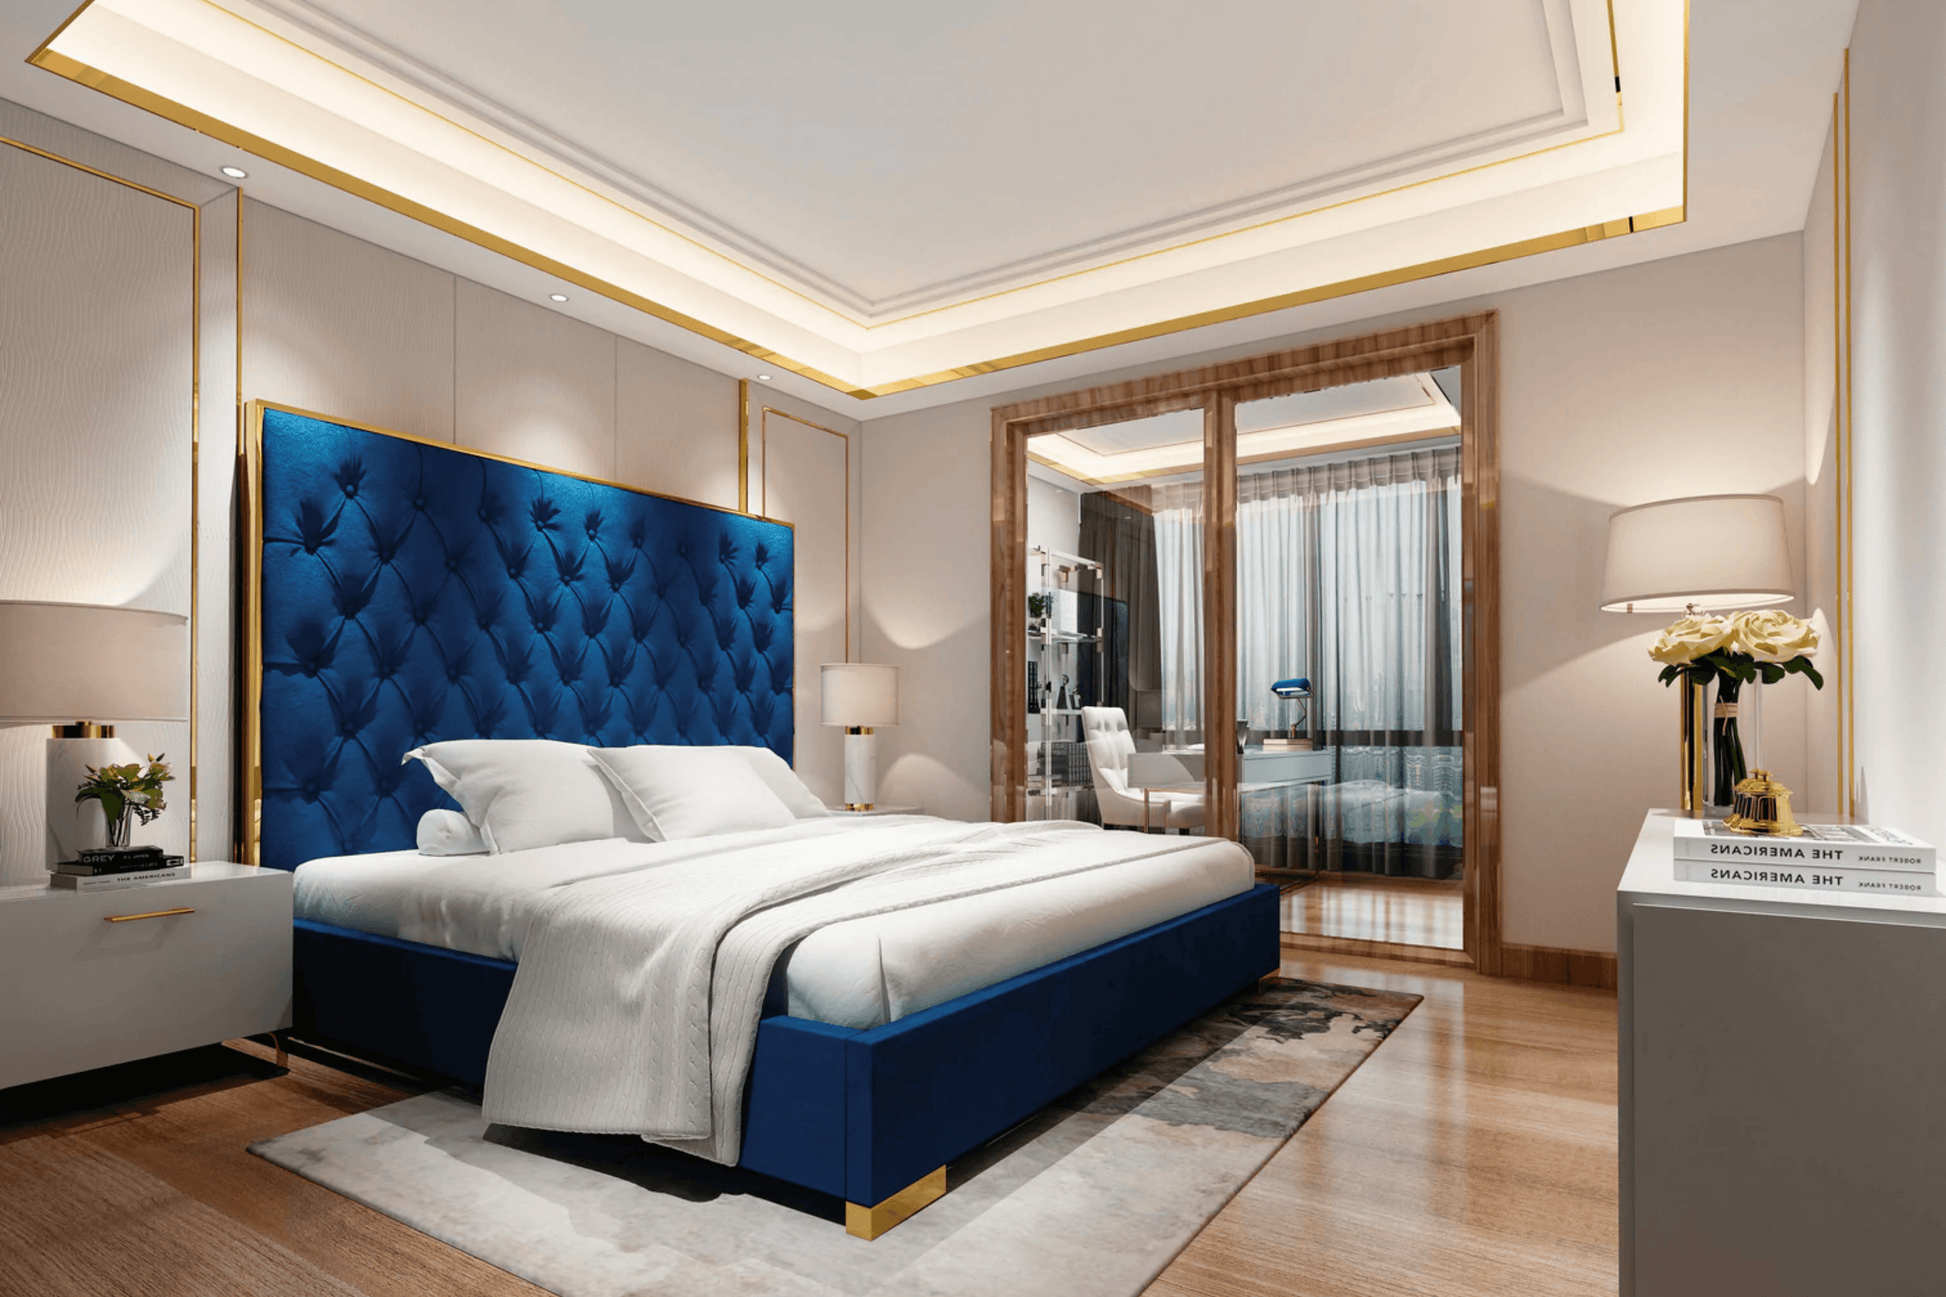 Venecia Bedroom Bed - Venini Furniture 